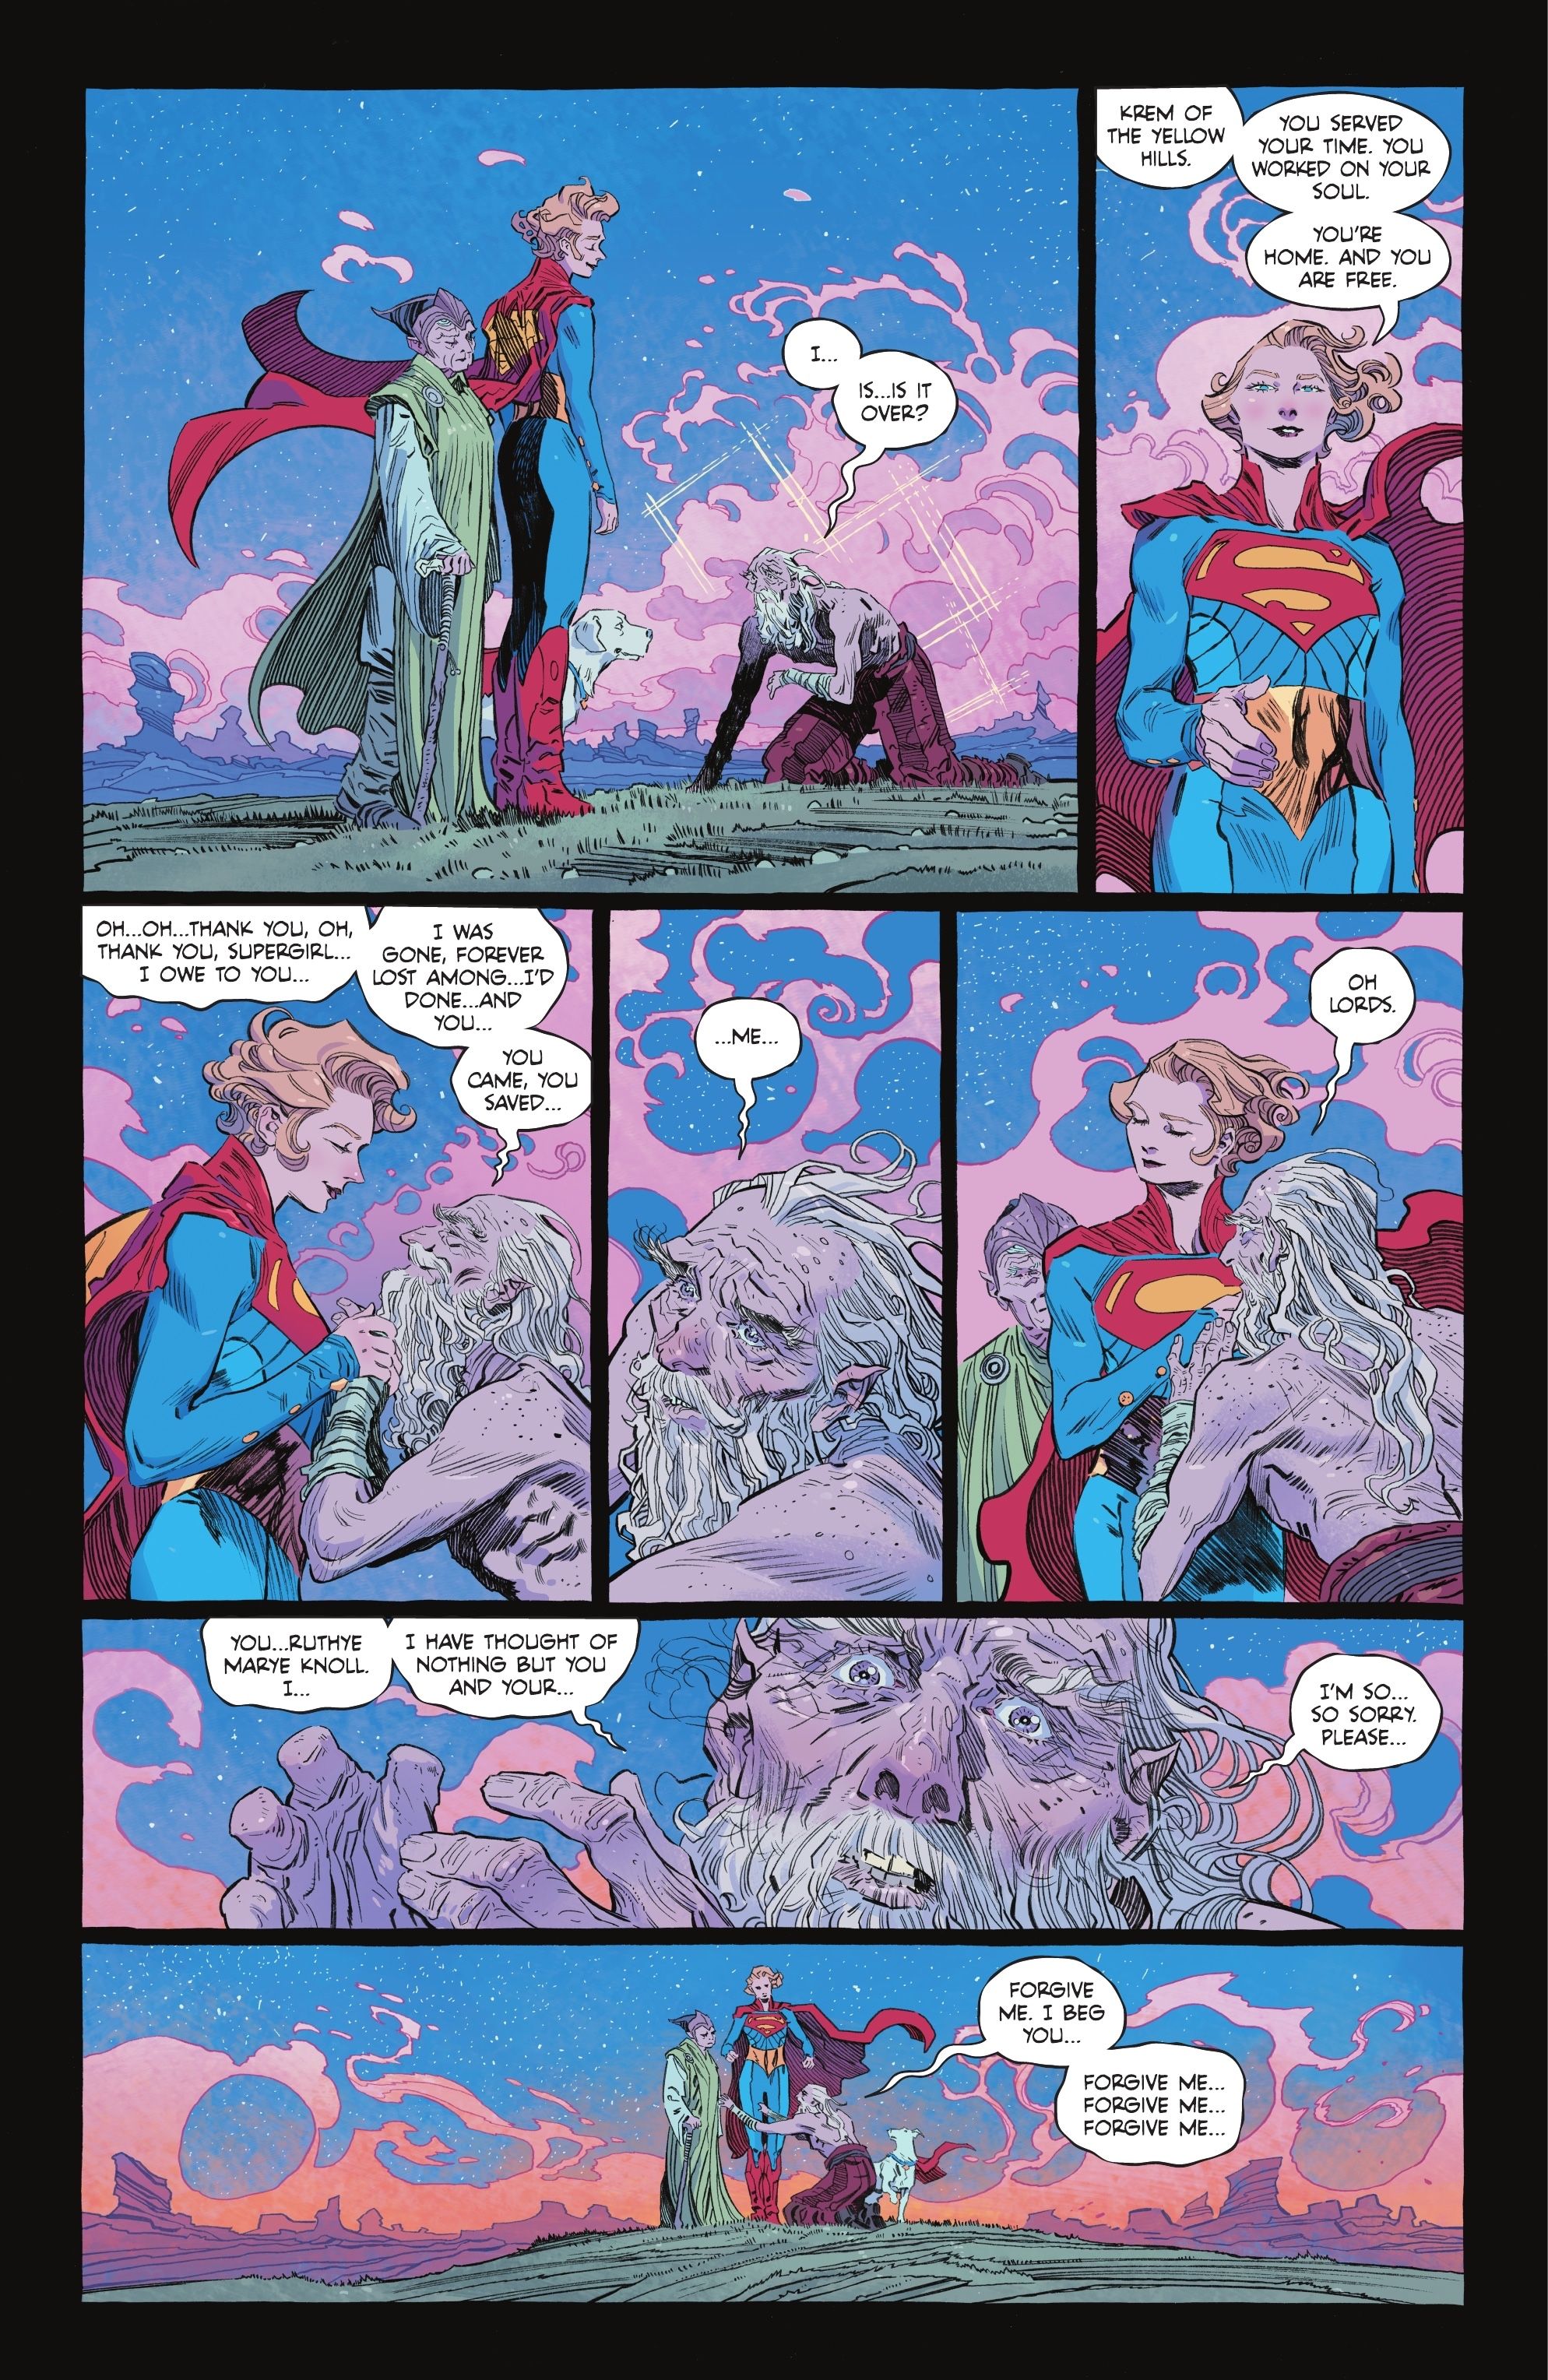 Supergirl frees Krem from the Phantom Zone